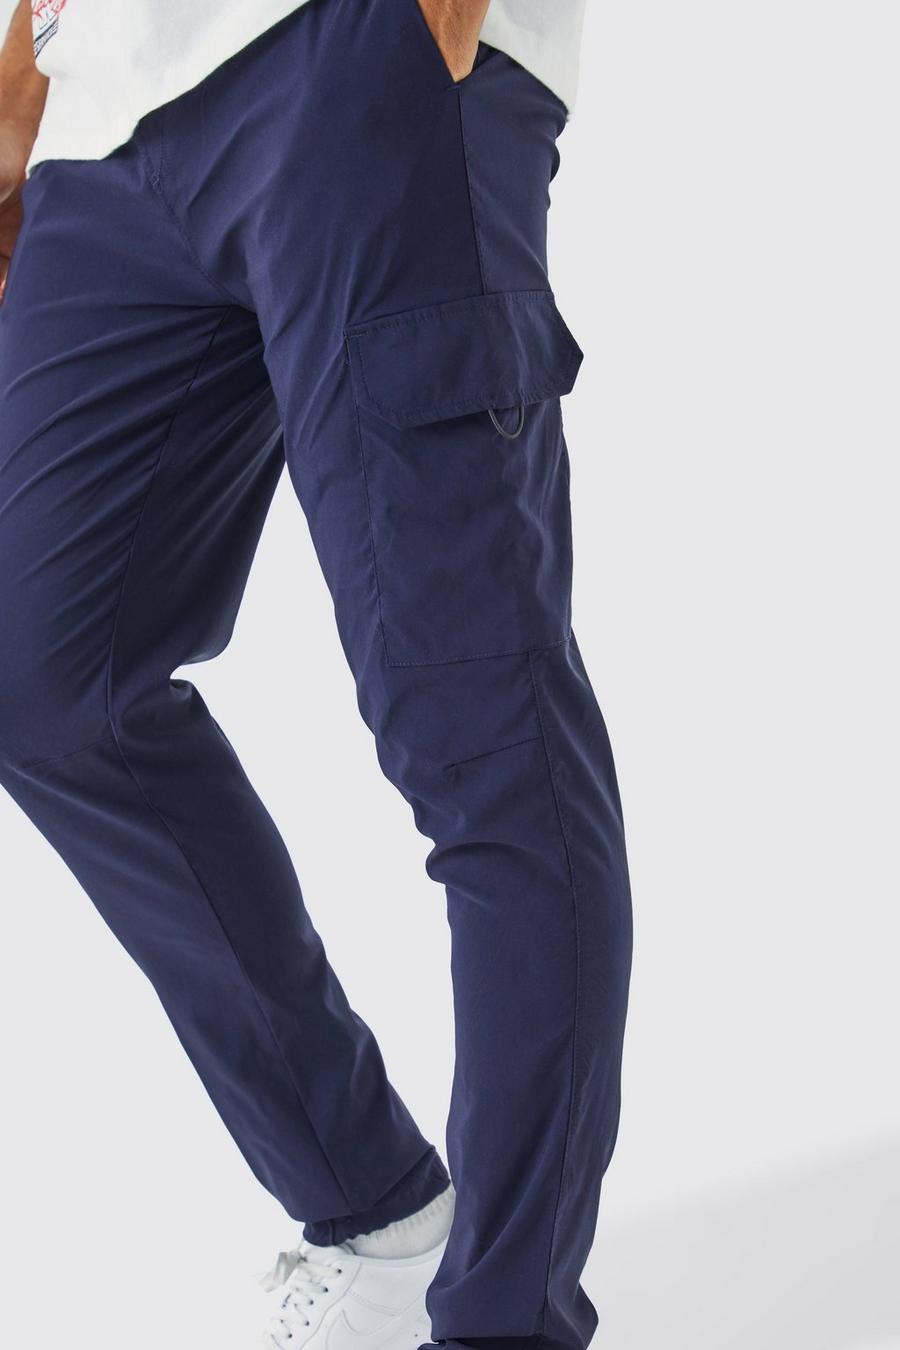 Pantalón cargo pitillo elástico ligero, Navy azul marino